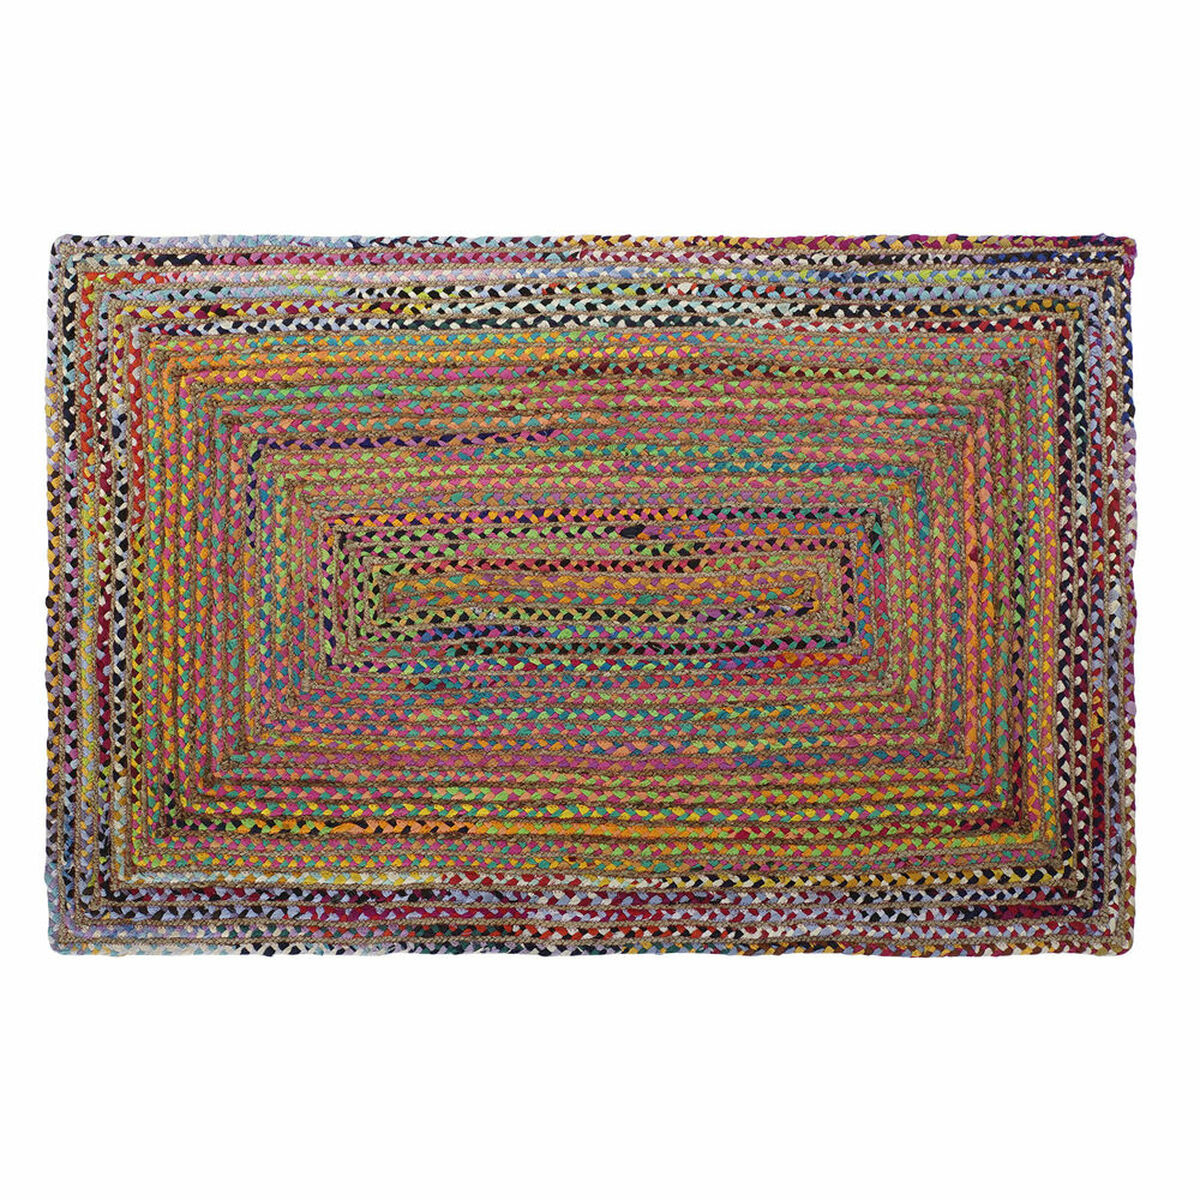 Tapis DKD Home Decor Marron Multicouleur Jute Coton (160 x 230 x 1 cm)